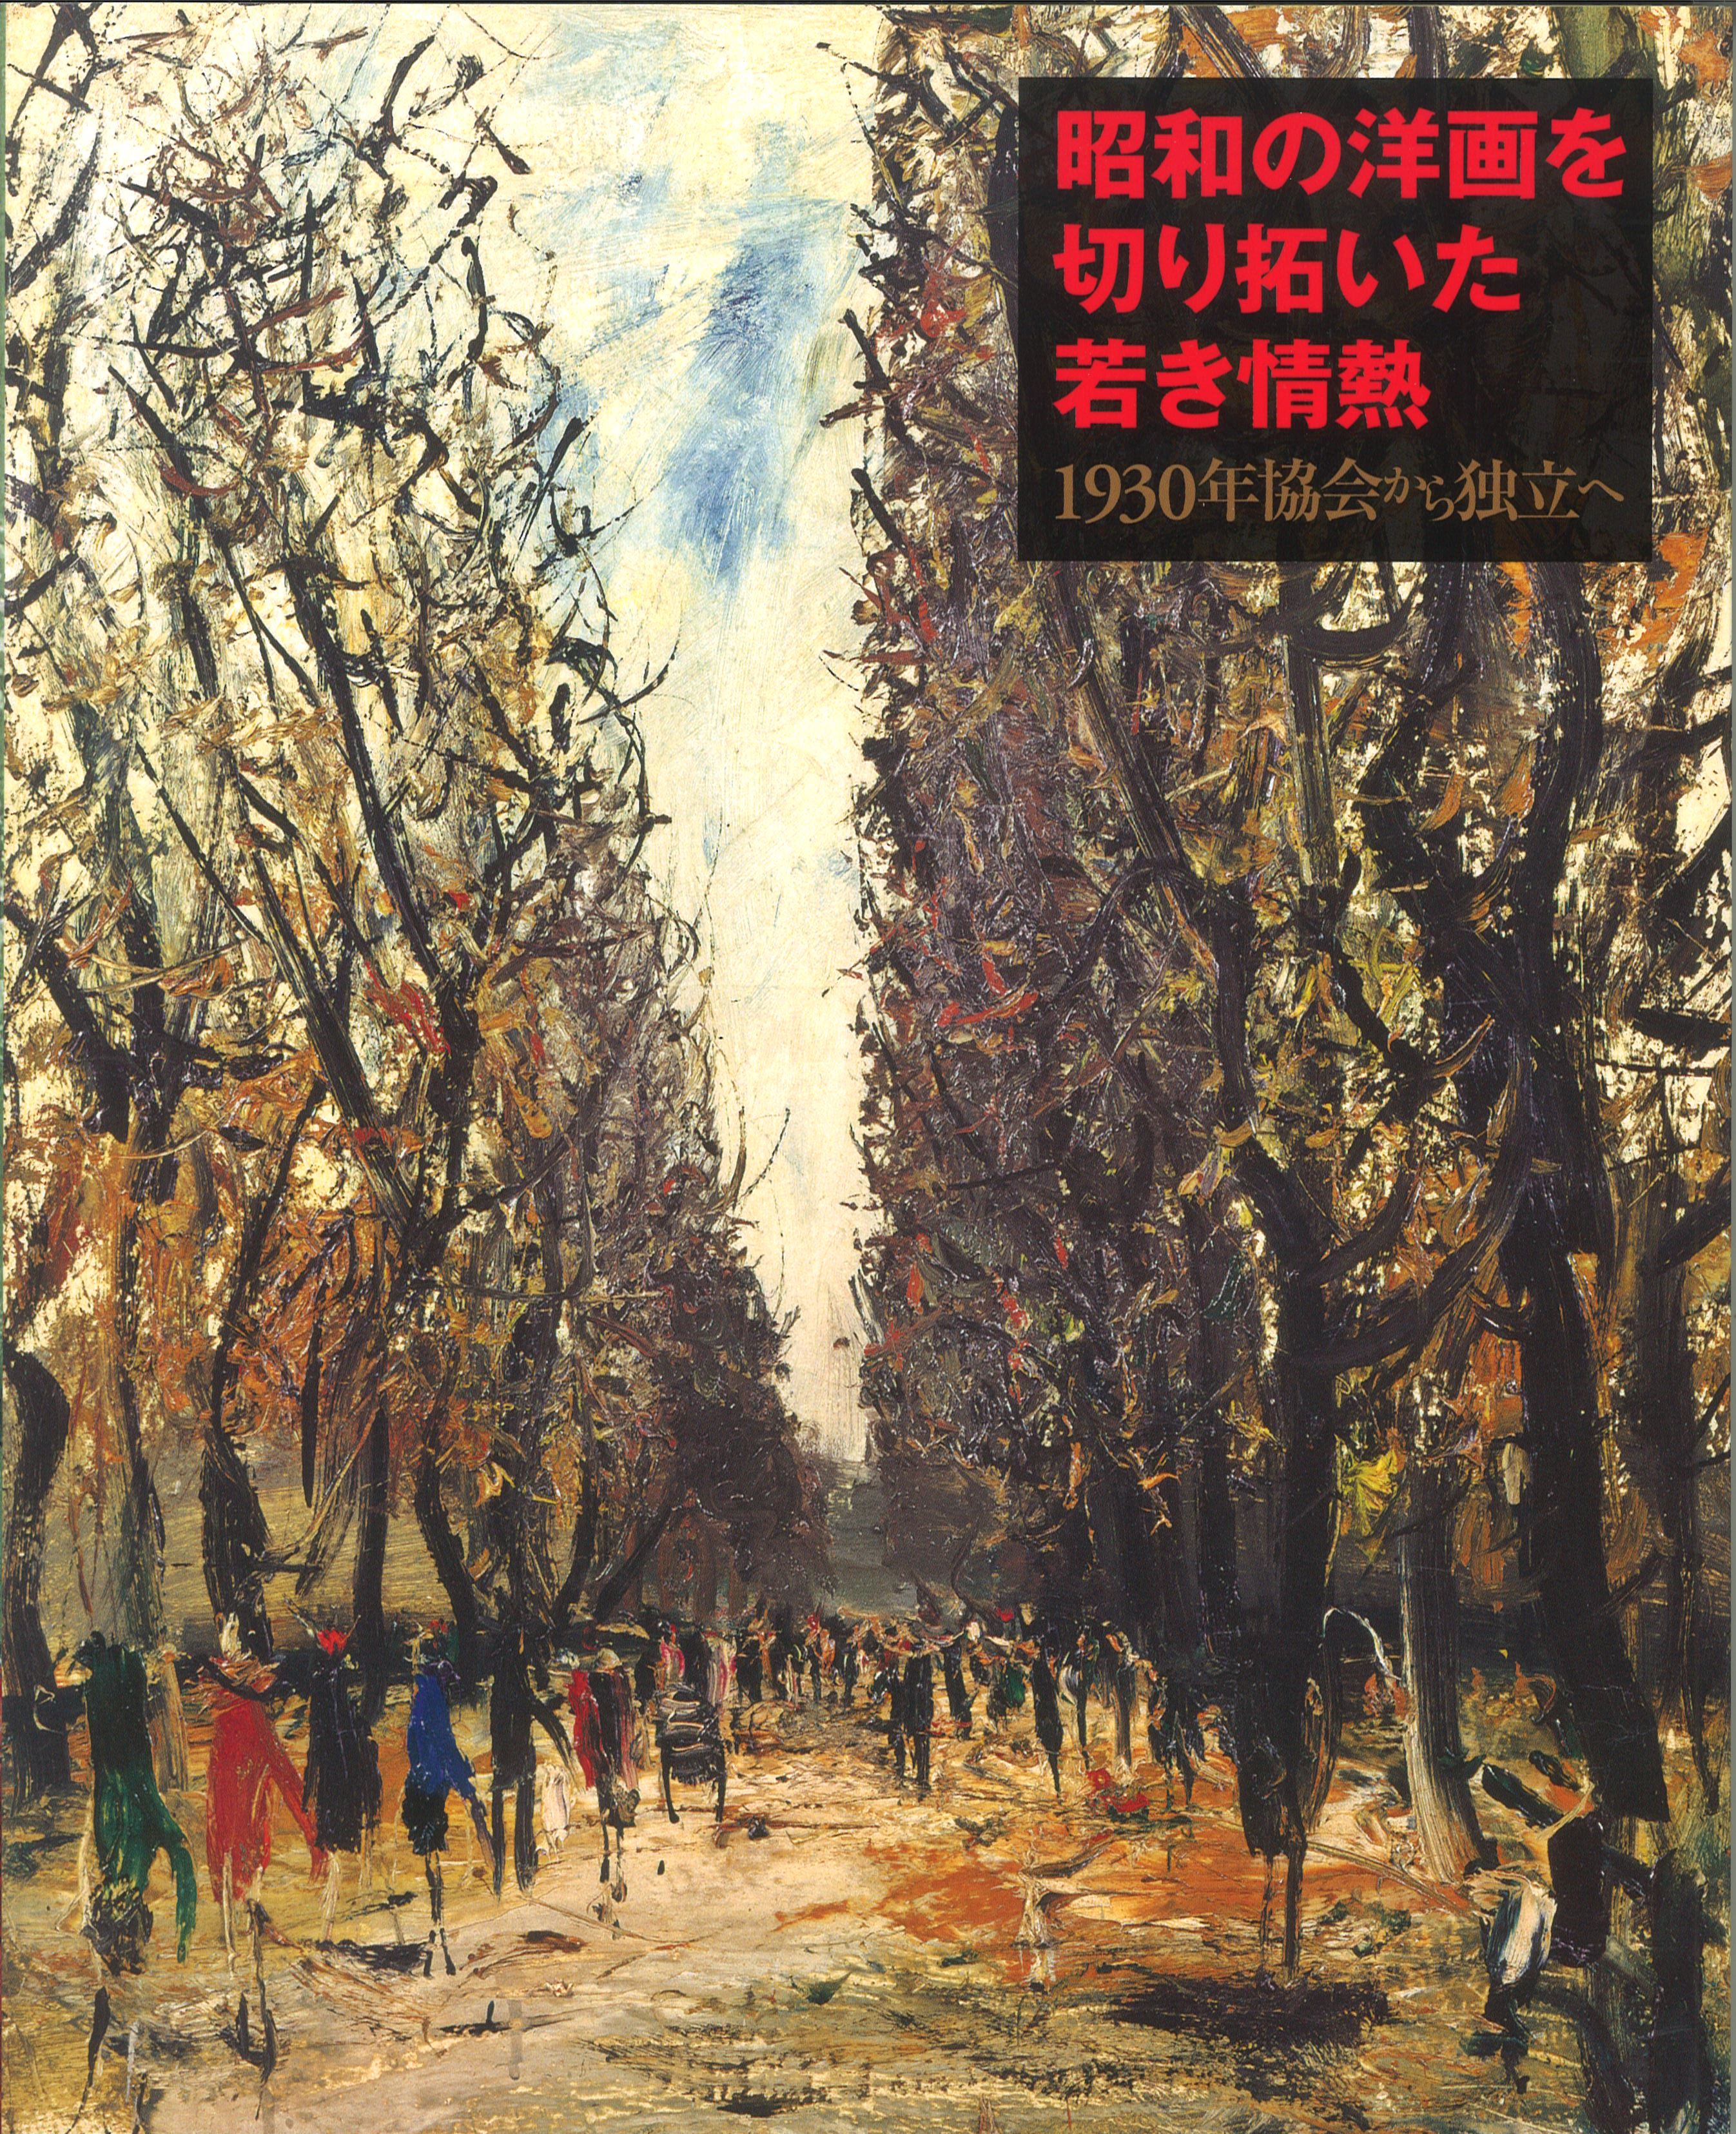 昭和の洋画を切り拓いた若き情熱　1930年協会から独立へ